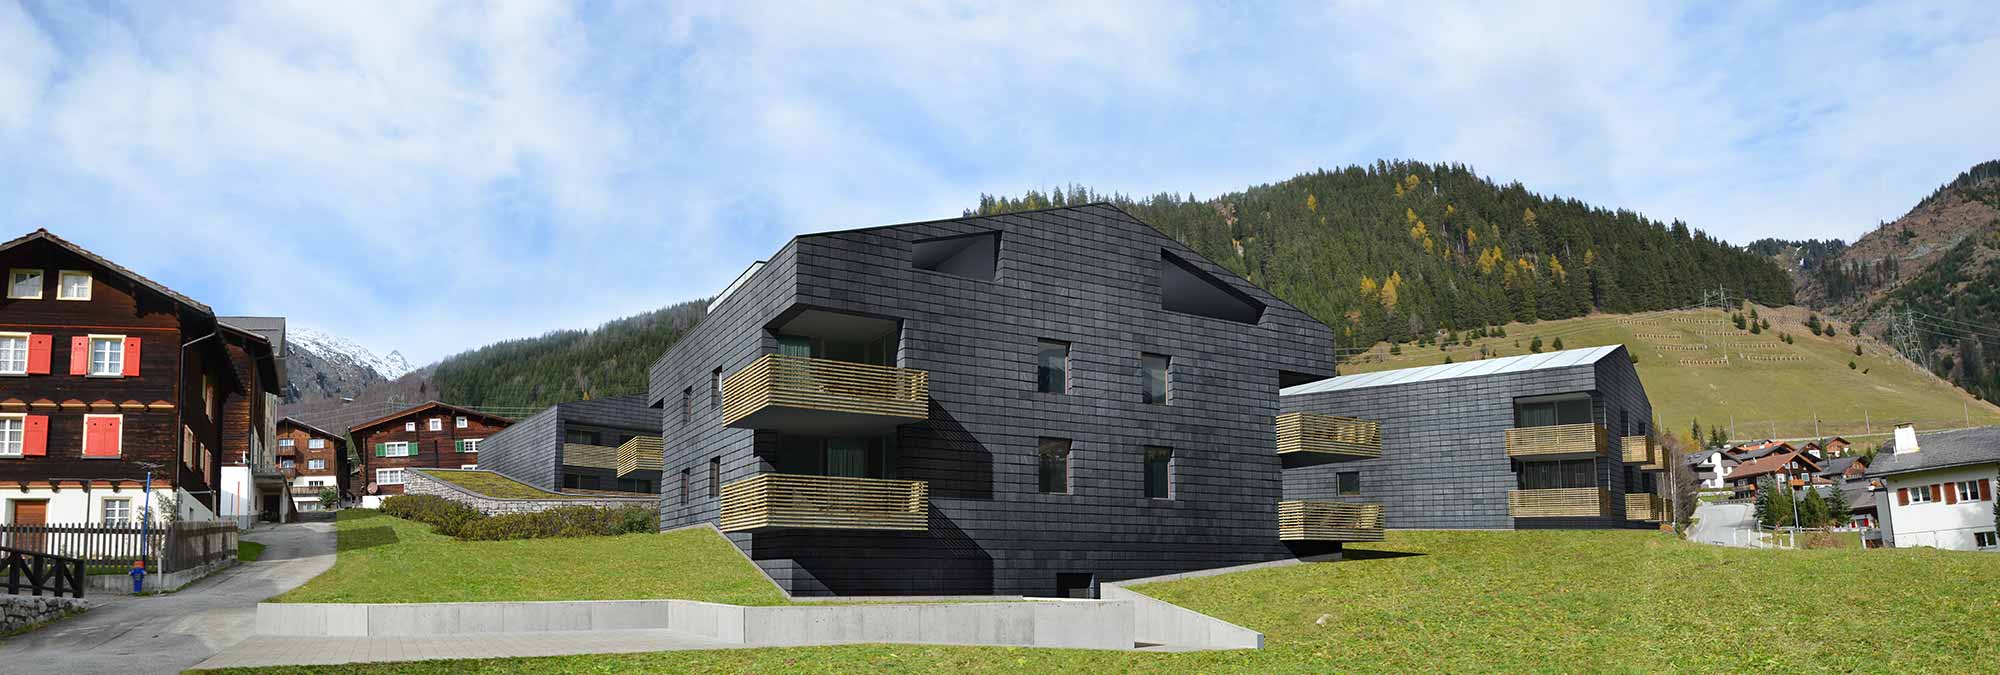 art-of-loft-studie-wettbewerb-ueberbauung-4-peaks-residence-sedrun-gr-02